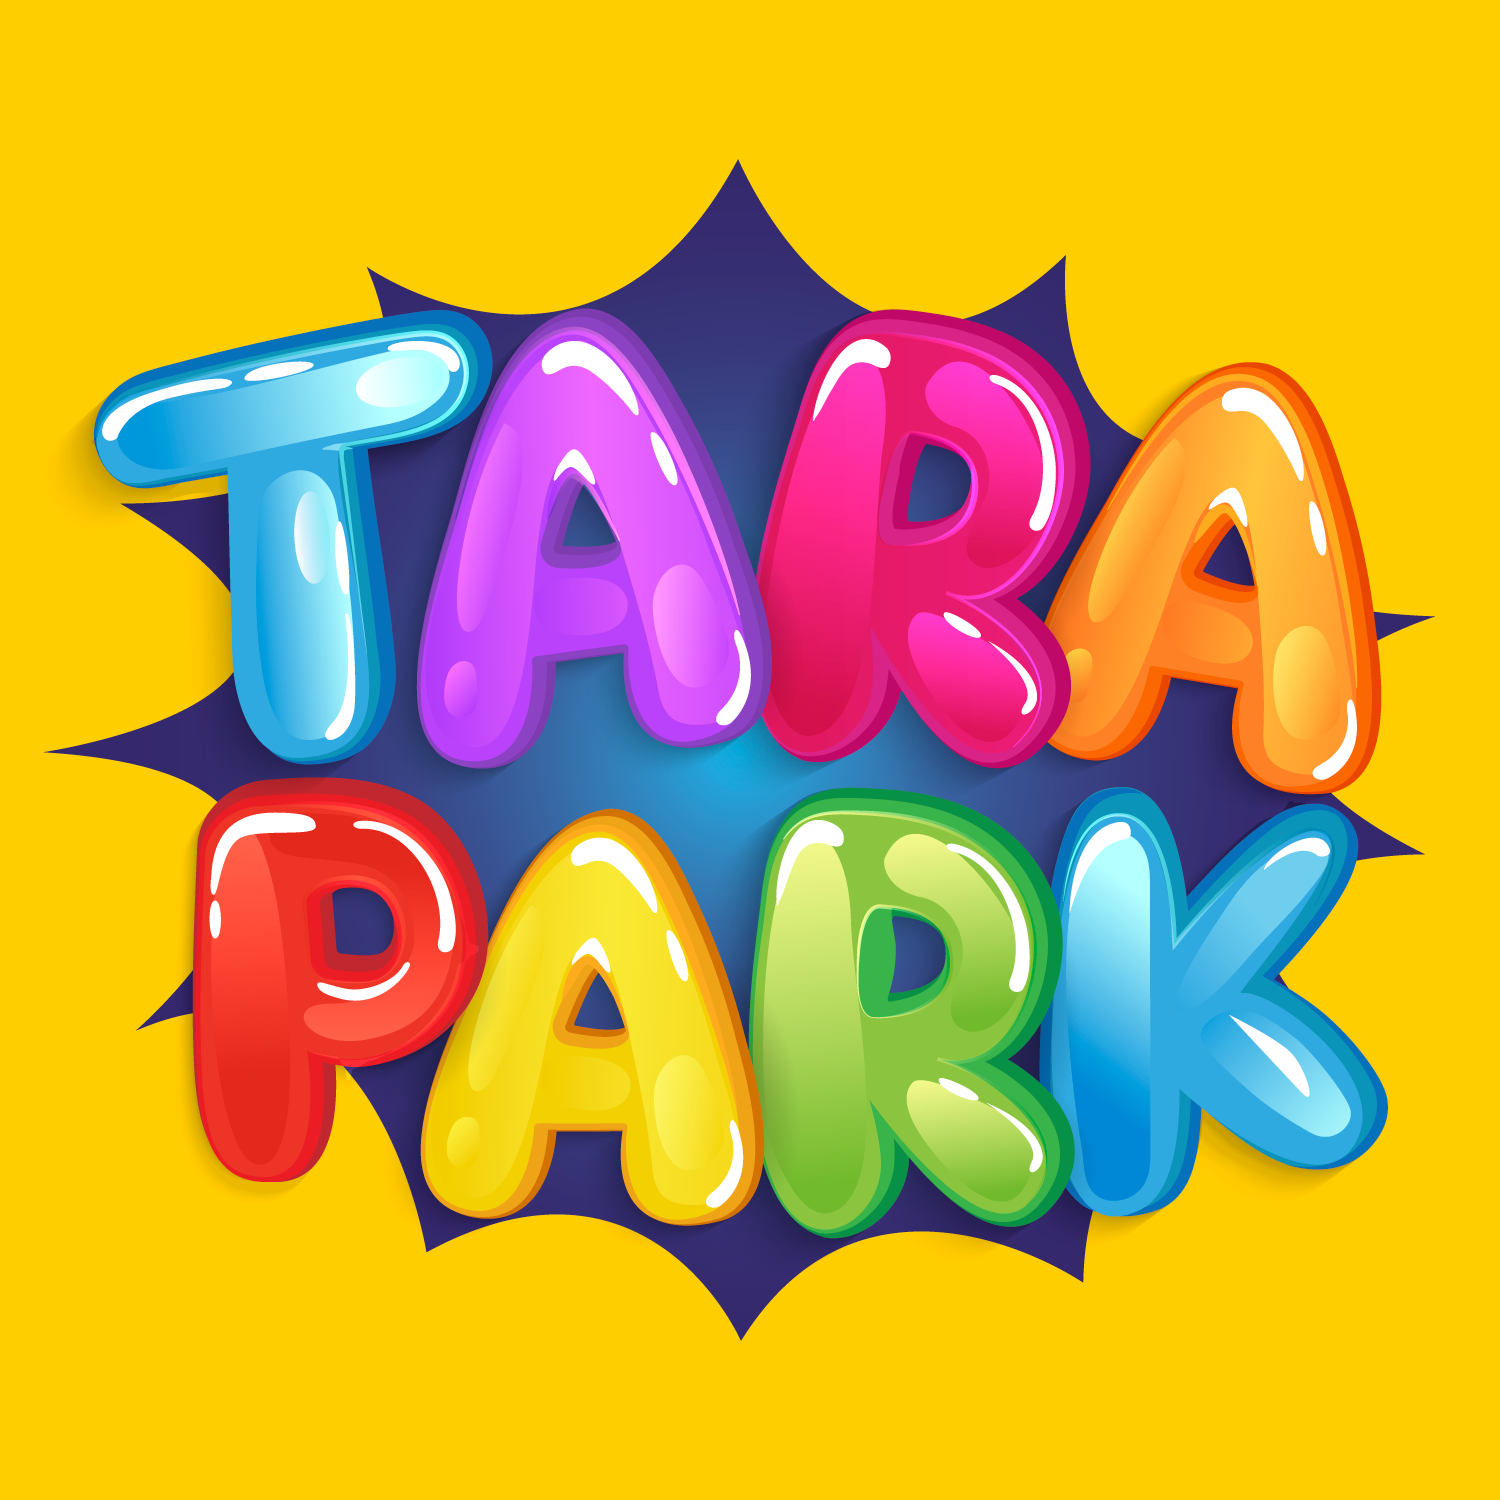 Tara Park